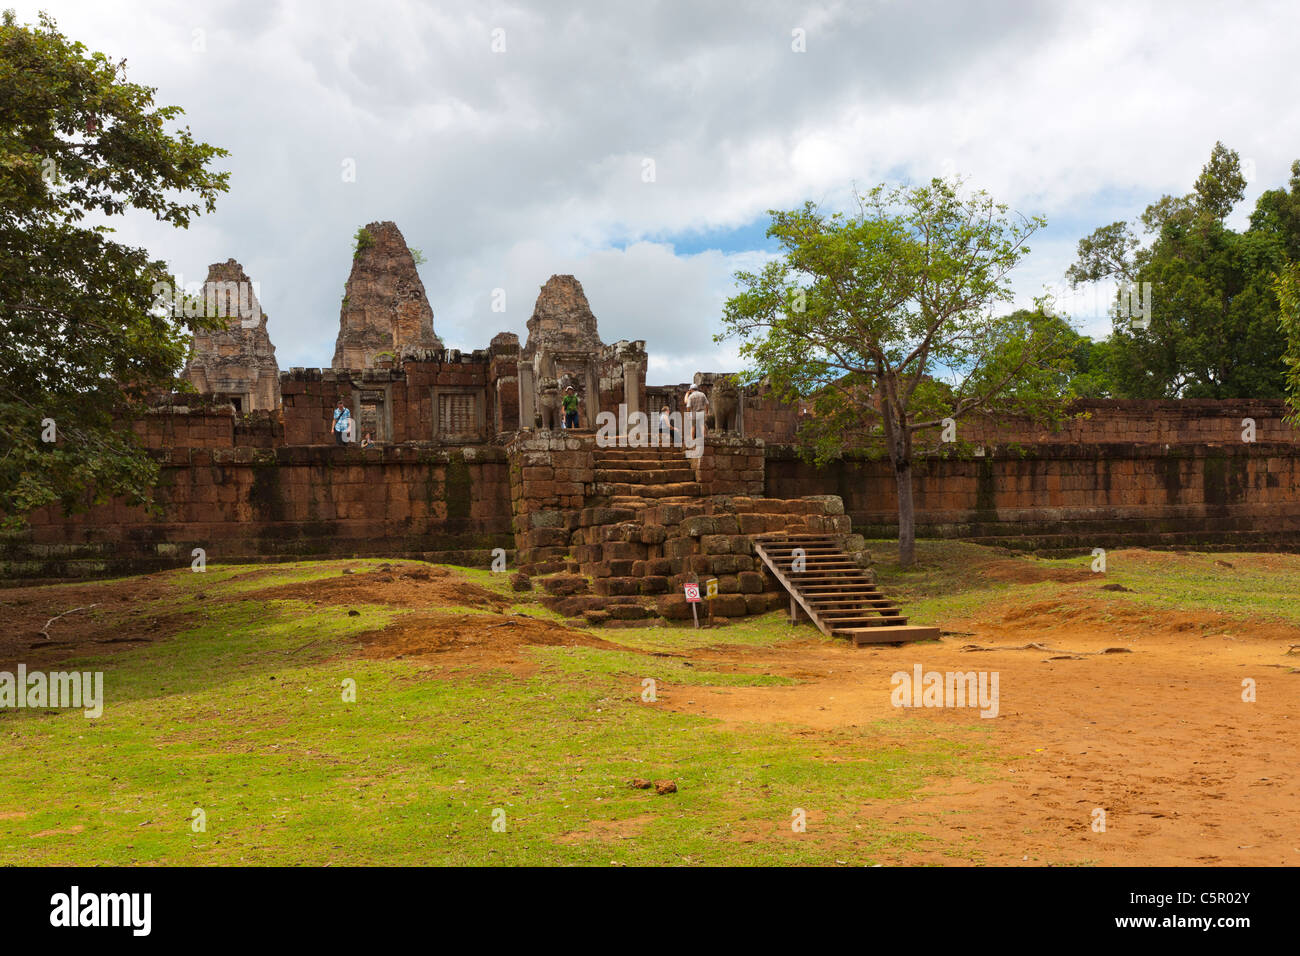 Prasat Pre Rup (girar el cuerpo), Angkor, sitio del Patrimonio Mundial de la UNESCO, Siem Reap, Camboya, en el sudeste de Asia Foto de stock